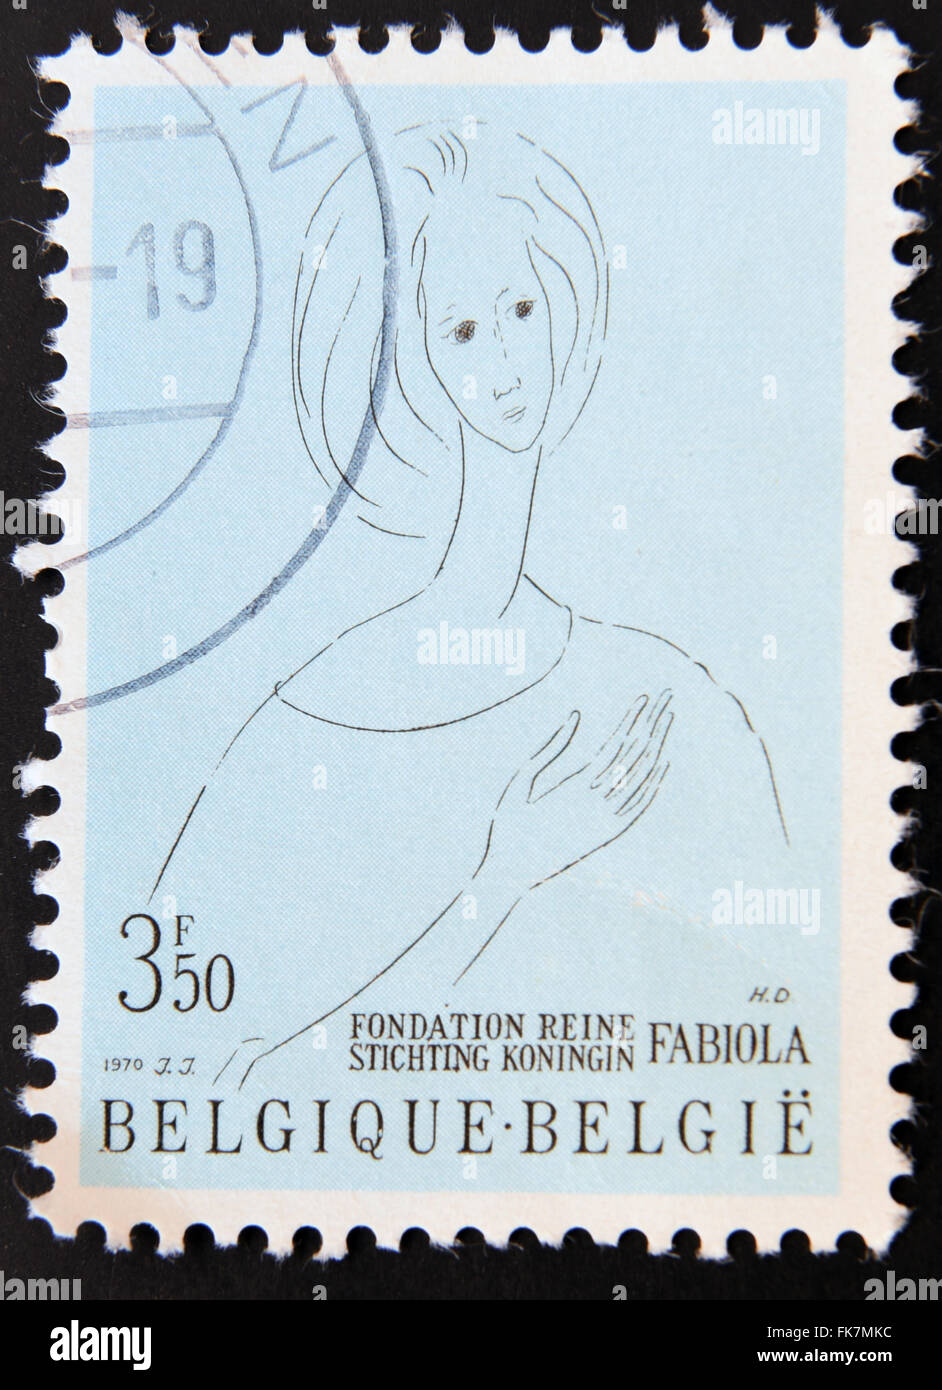 Belgique - circa 1970 : timbres en Belgique montre la Reine Fabiola, La Reine Fabiola pour la santé mentale de la Fondation, vers 1970 Banque D'Images